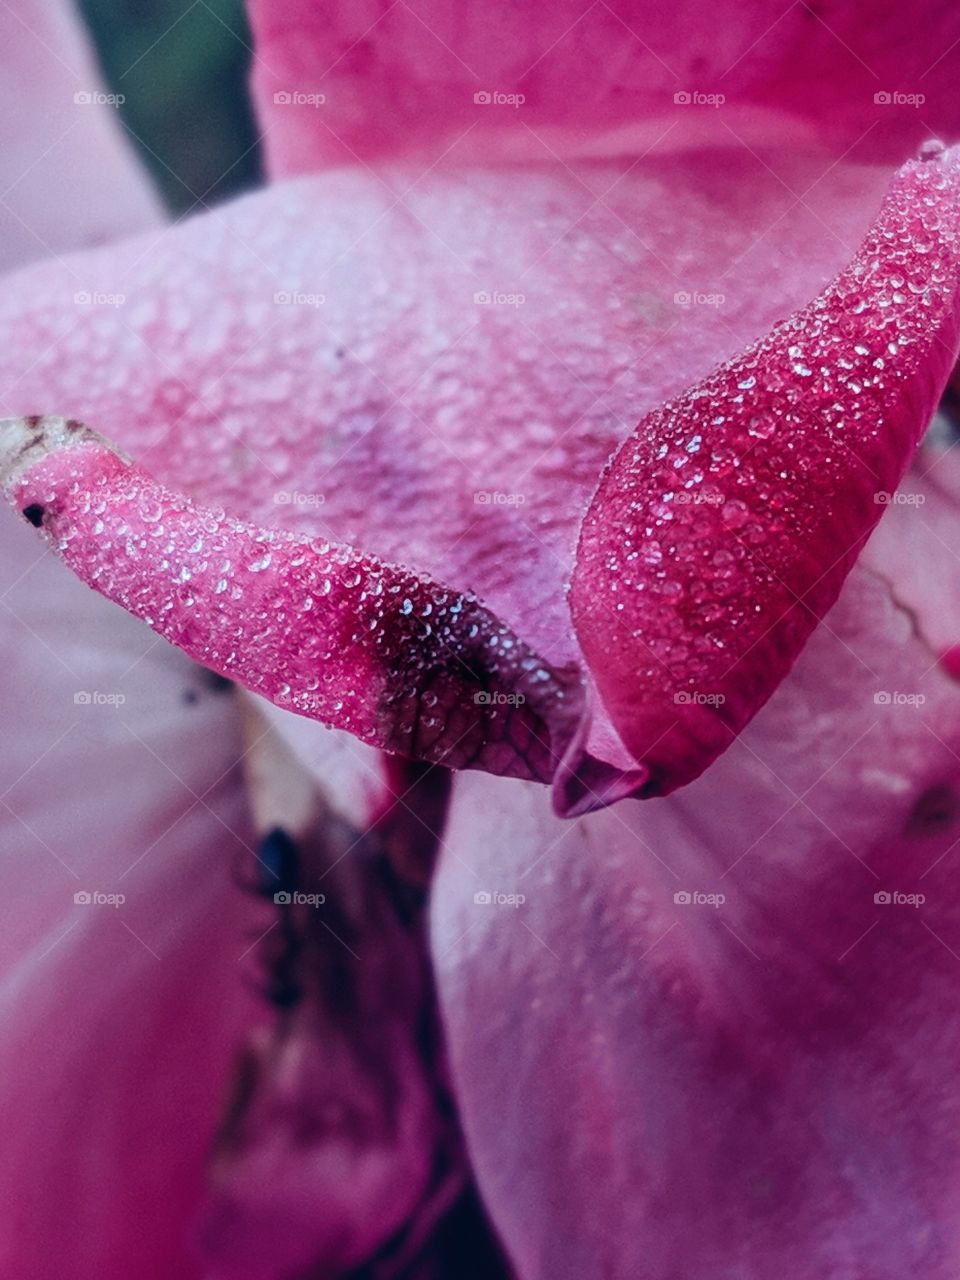 tiny dew drops on rose flower petals